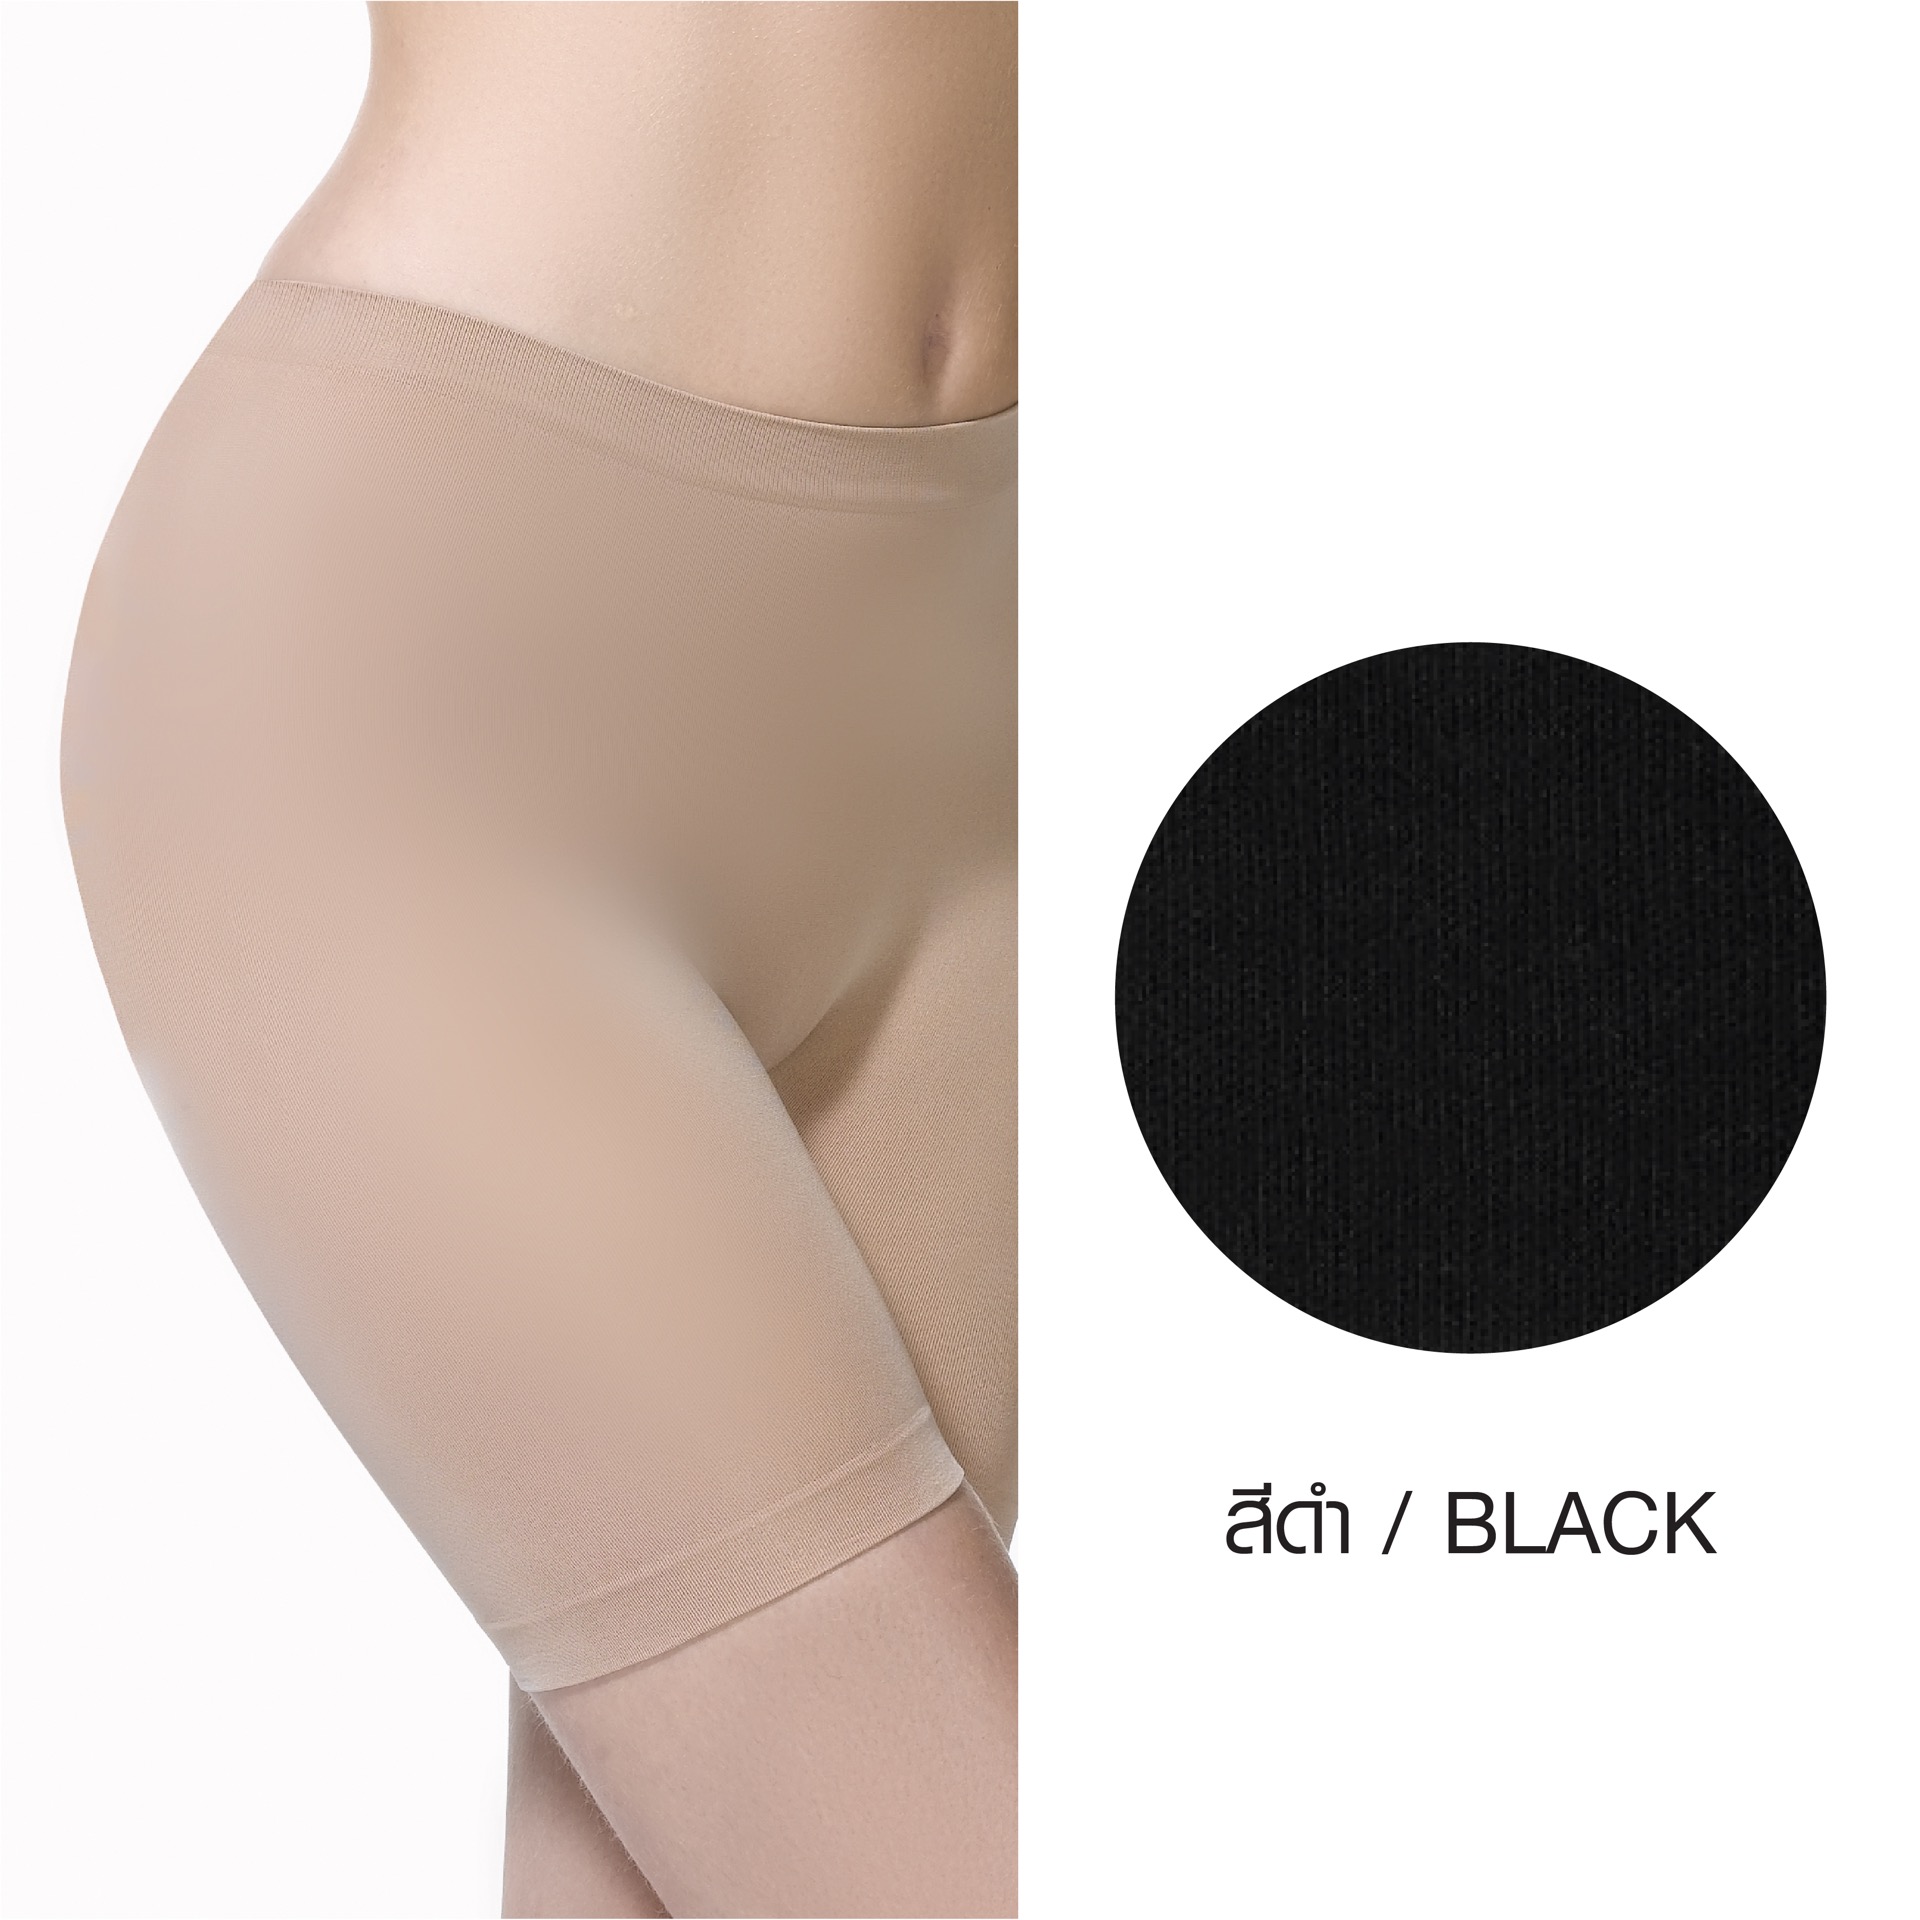 กางเกงขาสั้นกันโป๊ Cherilon Intimate รหัส BSSL07 สีดำ